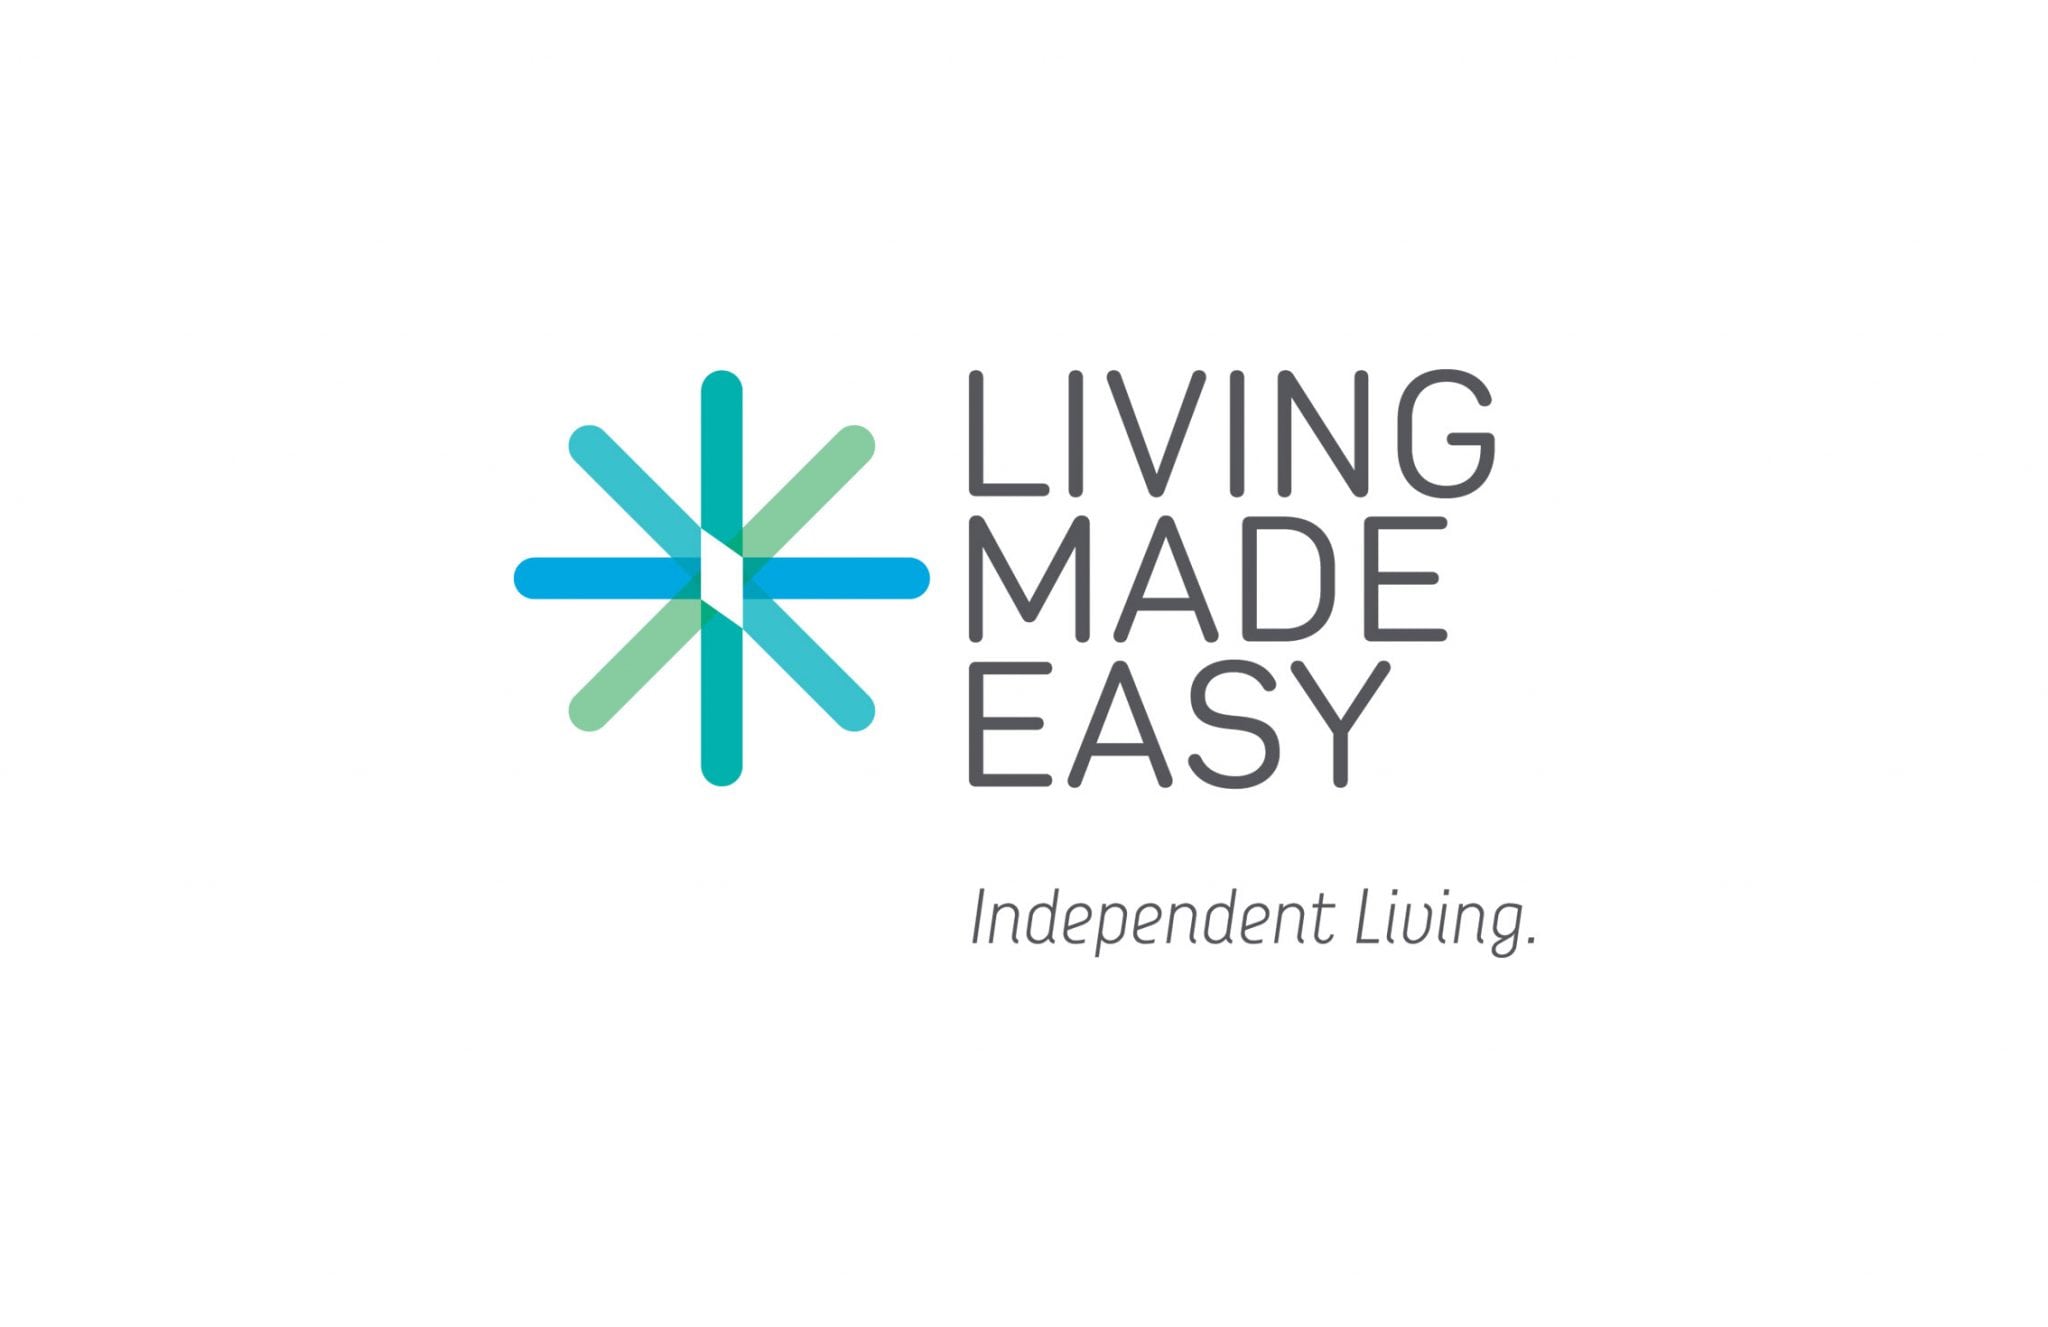 Living Made Easy - PSD Brand Design